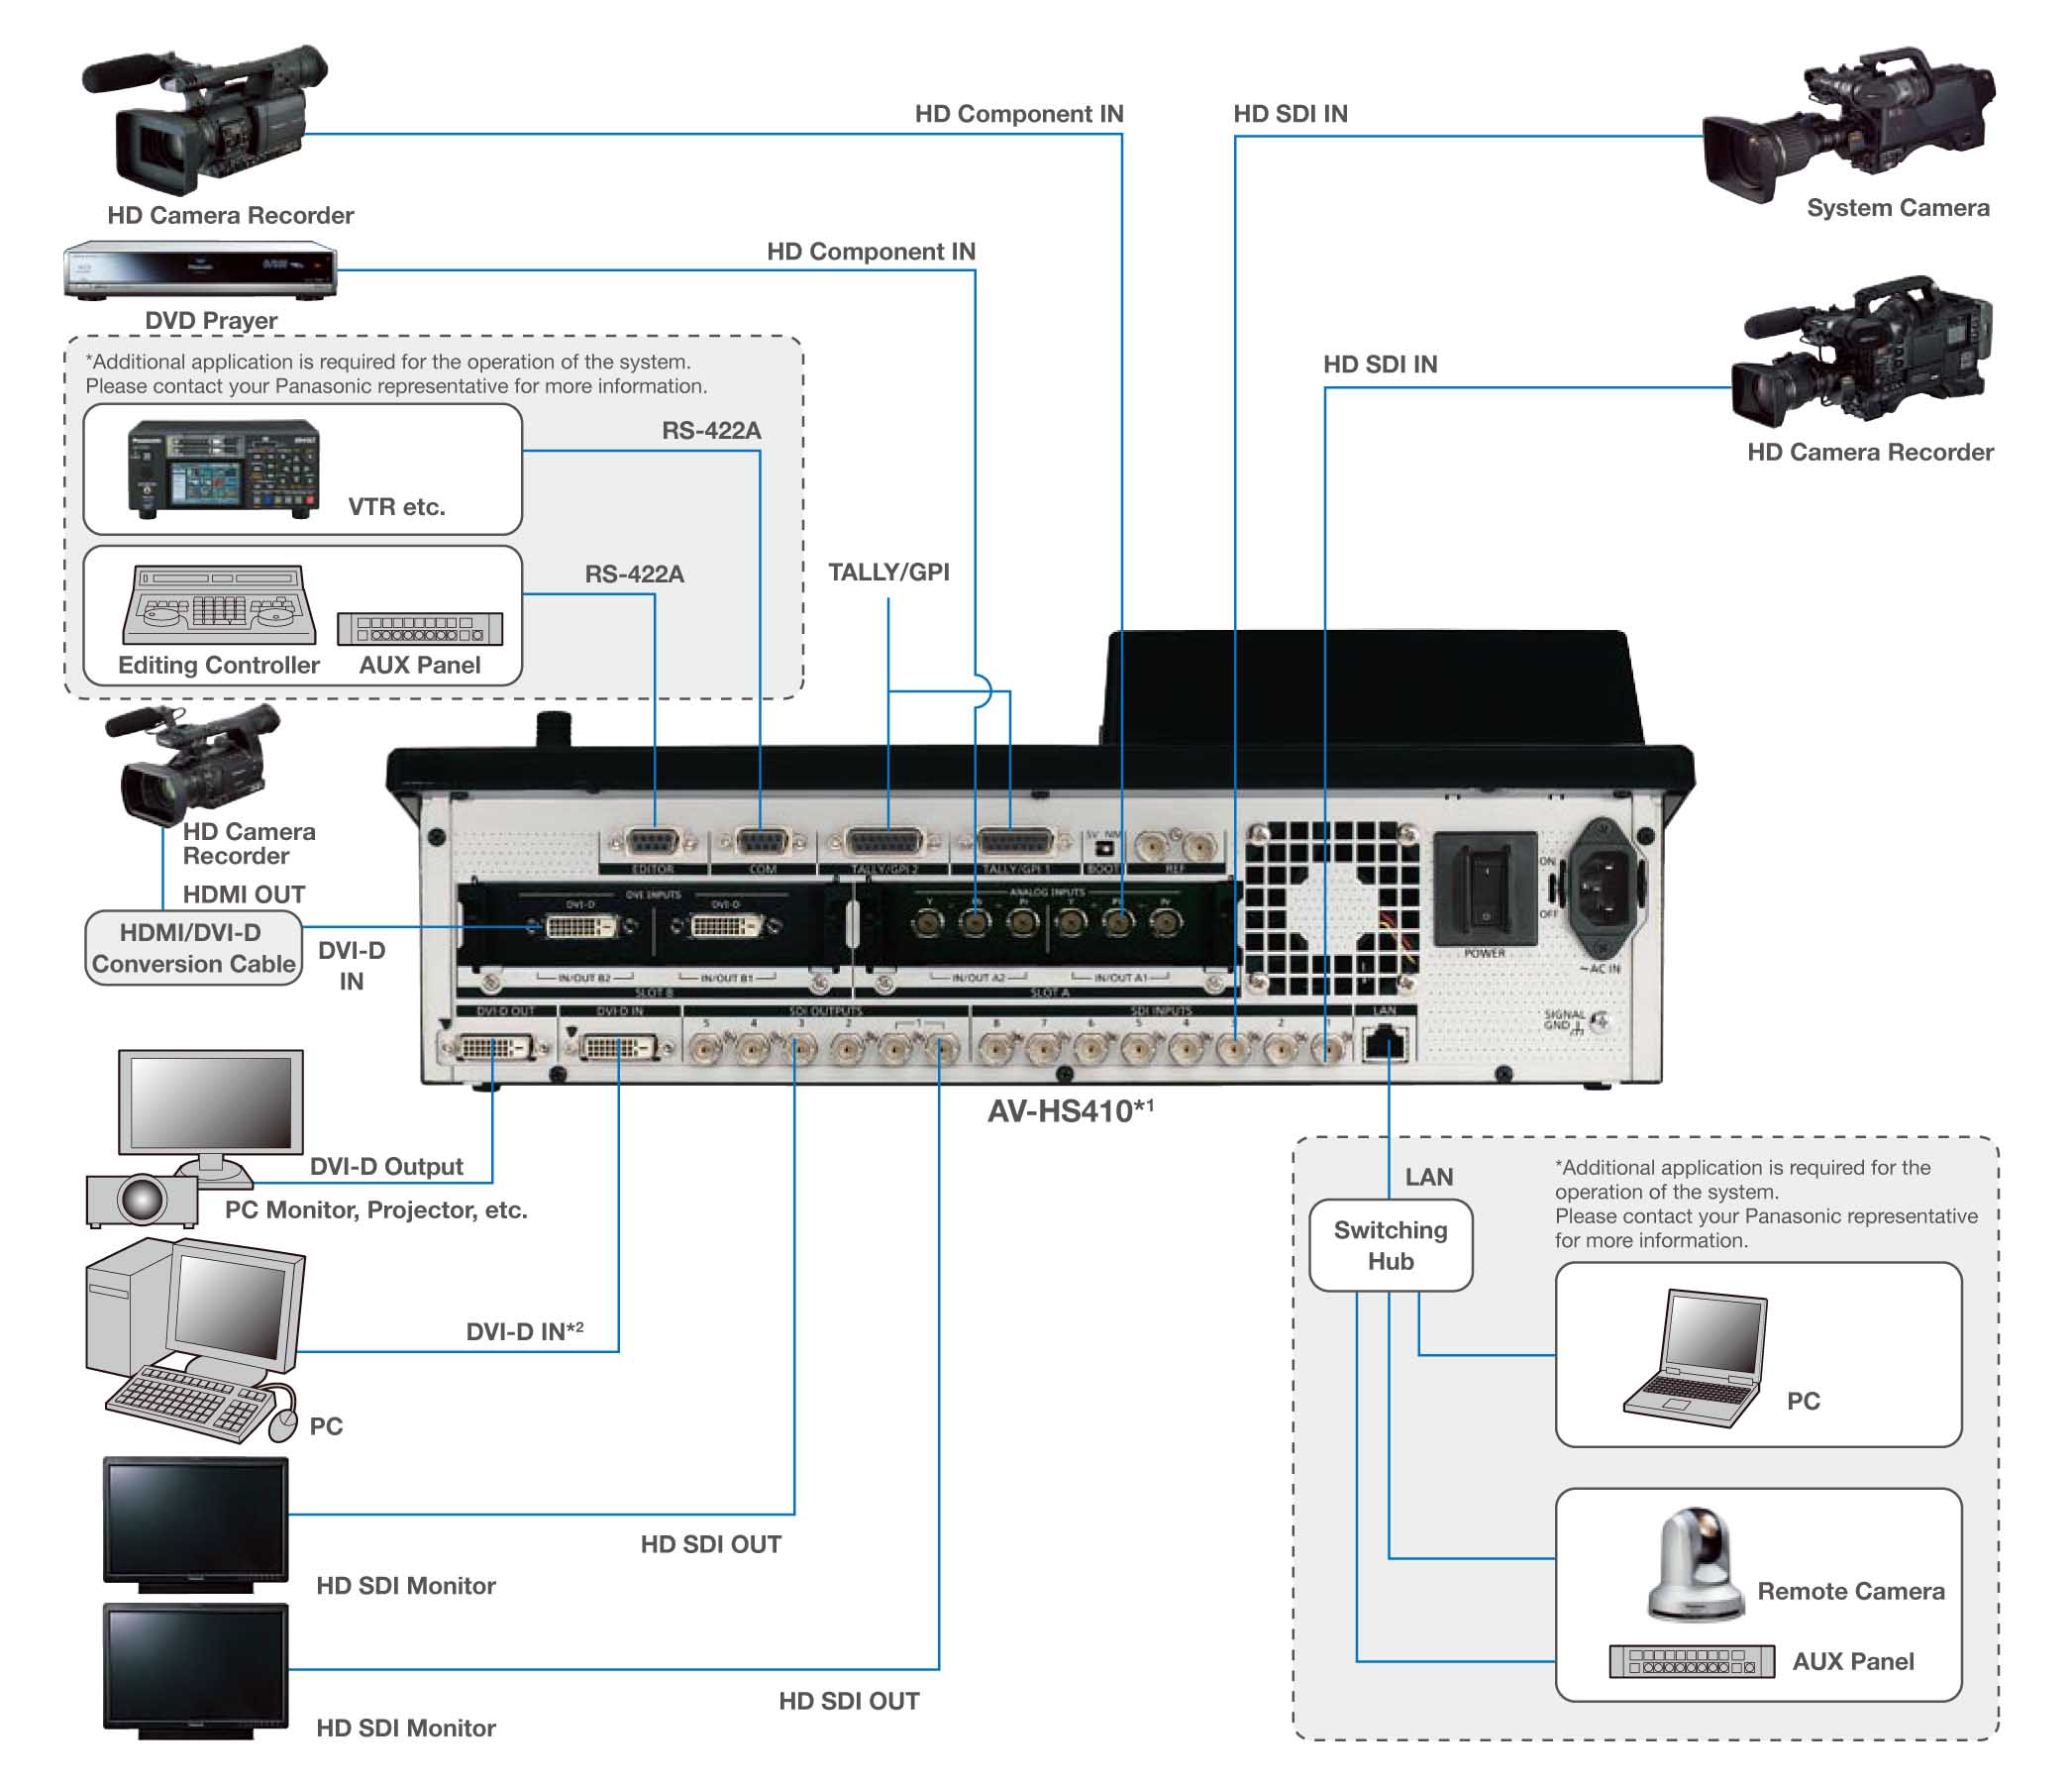 دیاگرام تجهیزات تصویری دیجیتال متصل به میکسر Panasonic